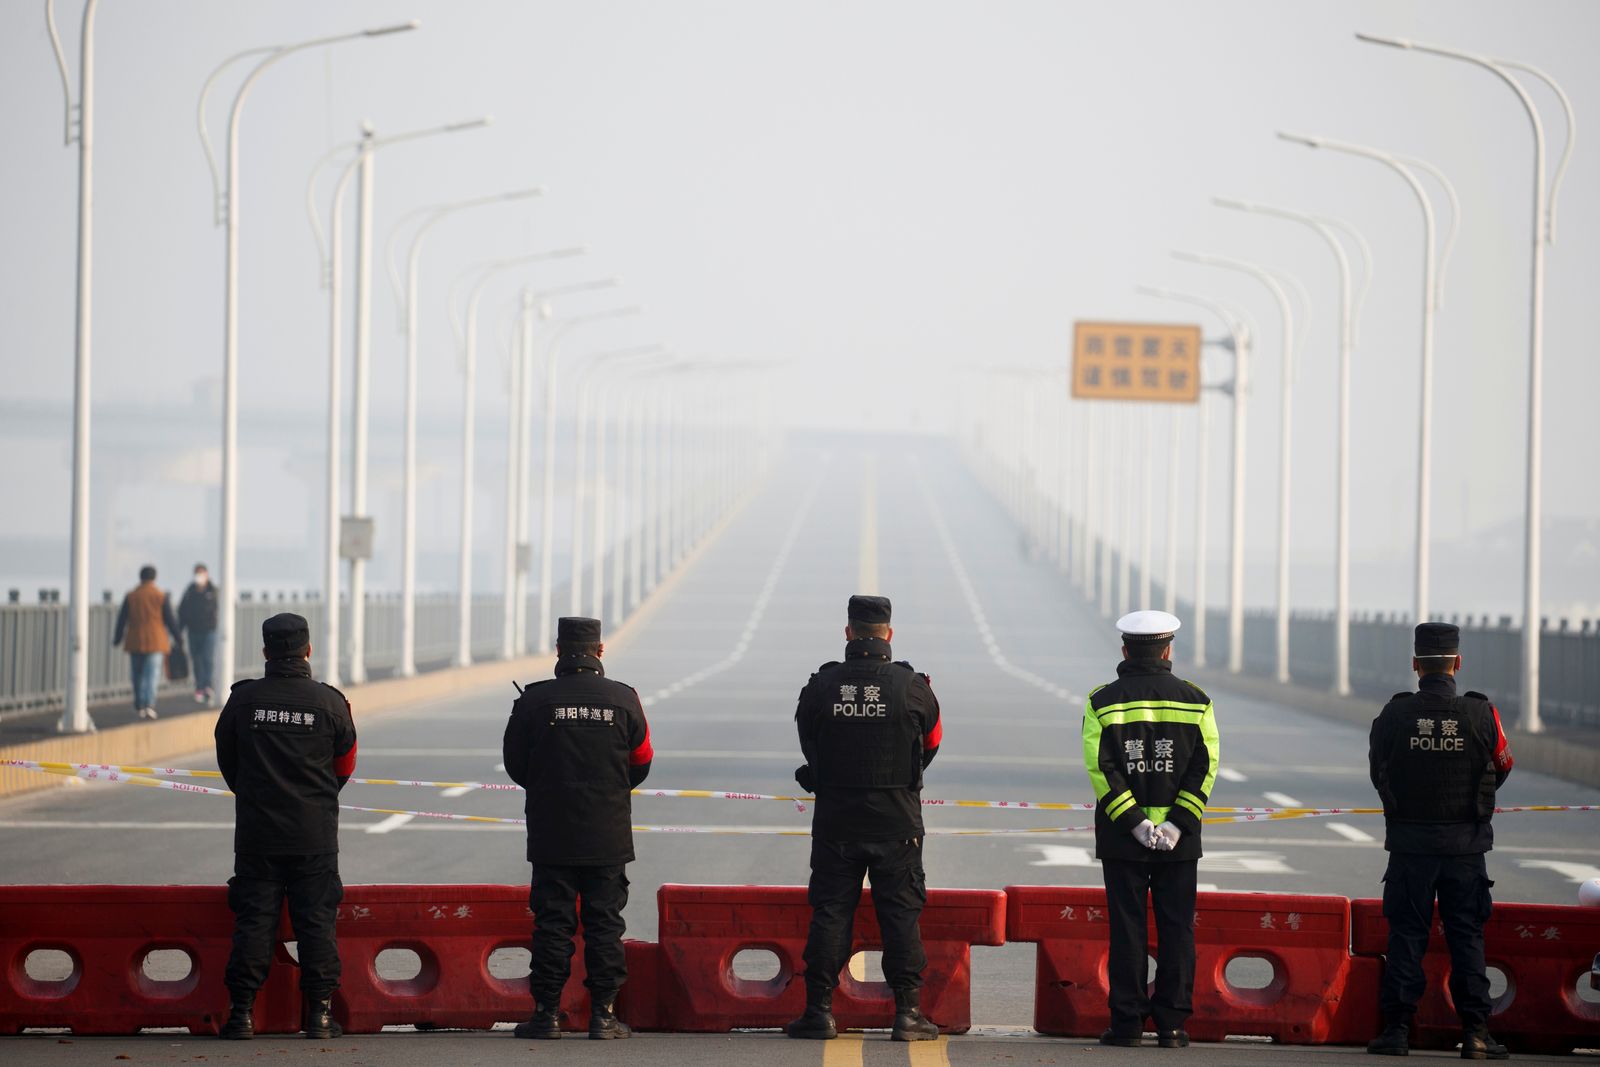 Trung Quốc trừng phạt quan chức tự ý thông báo nới lỏng lệnh phong tỏa Vũ Hán